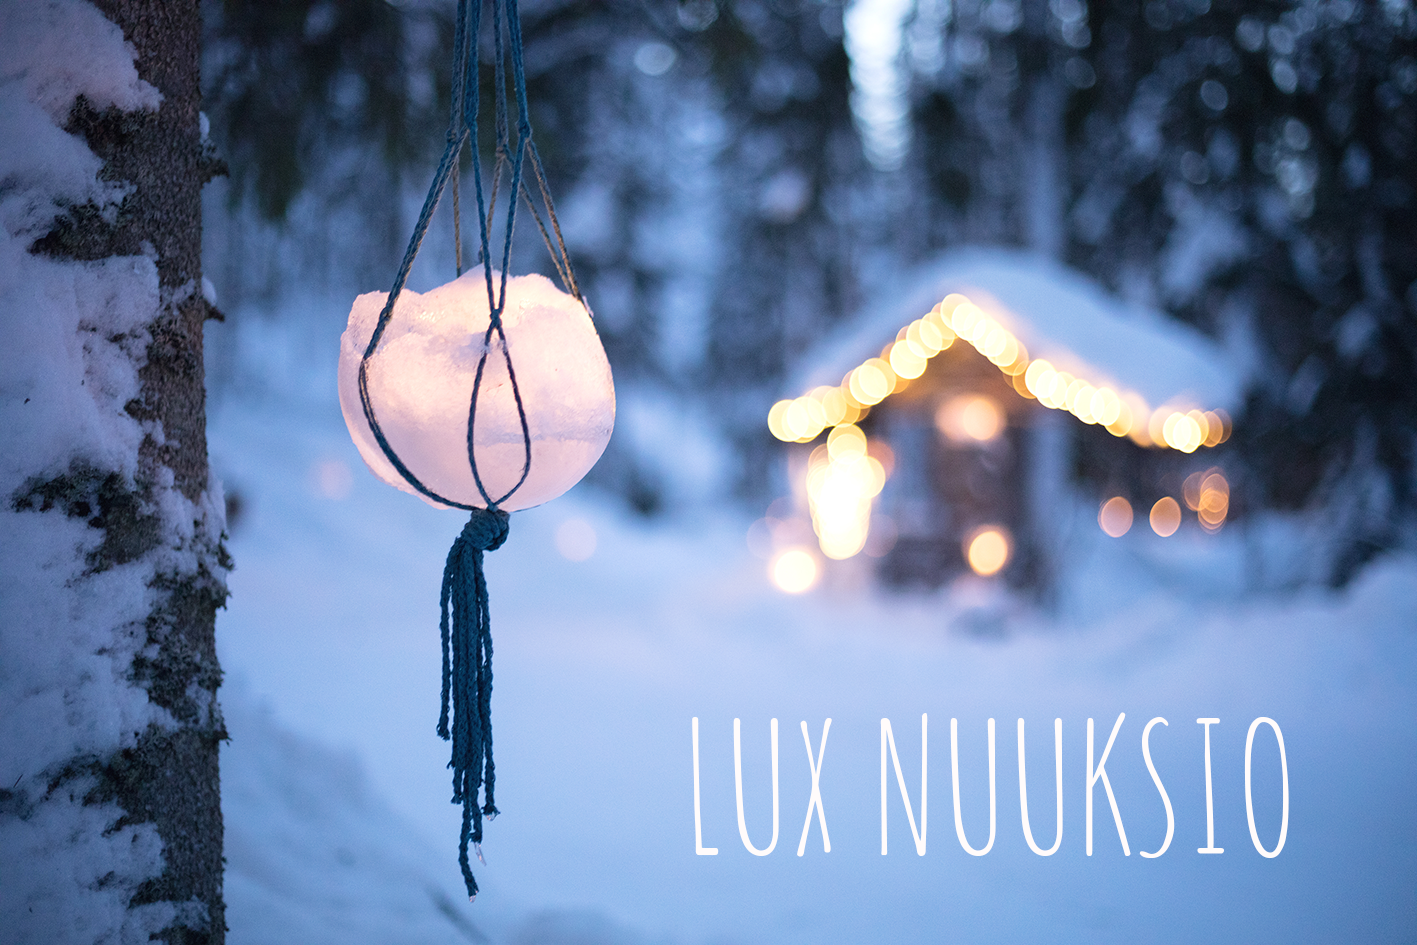 Puusta roikkuva jäälyhty Lux Nuuksiossa.